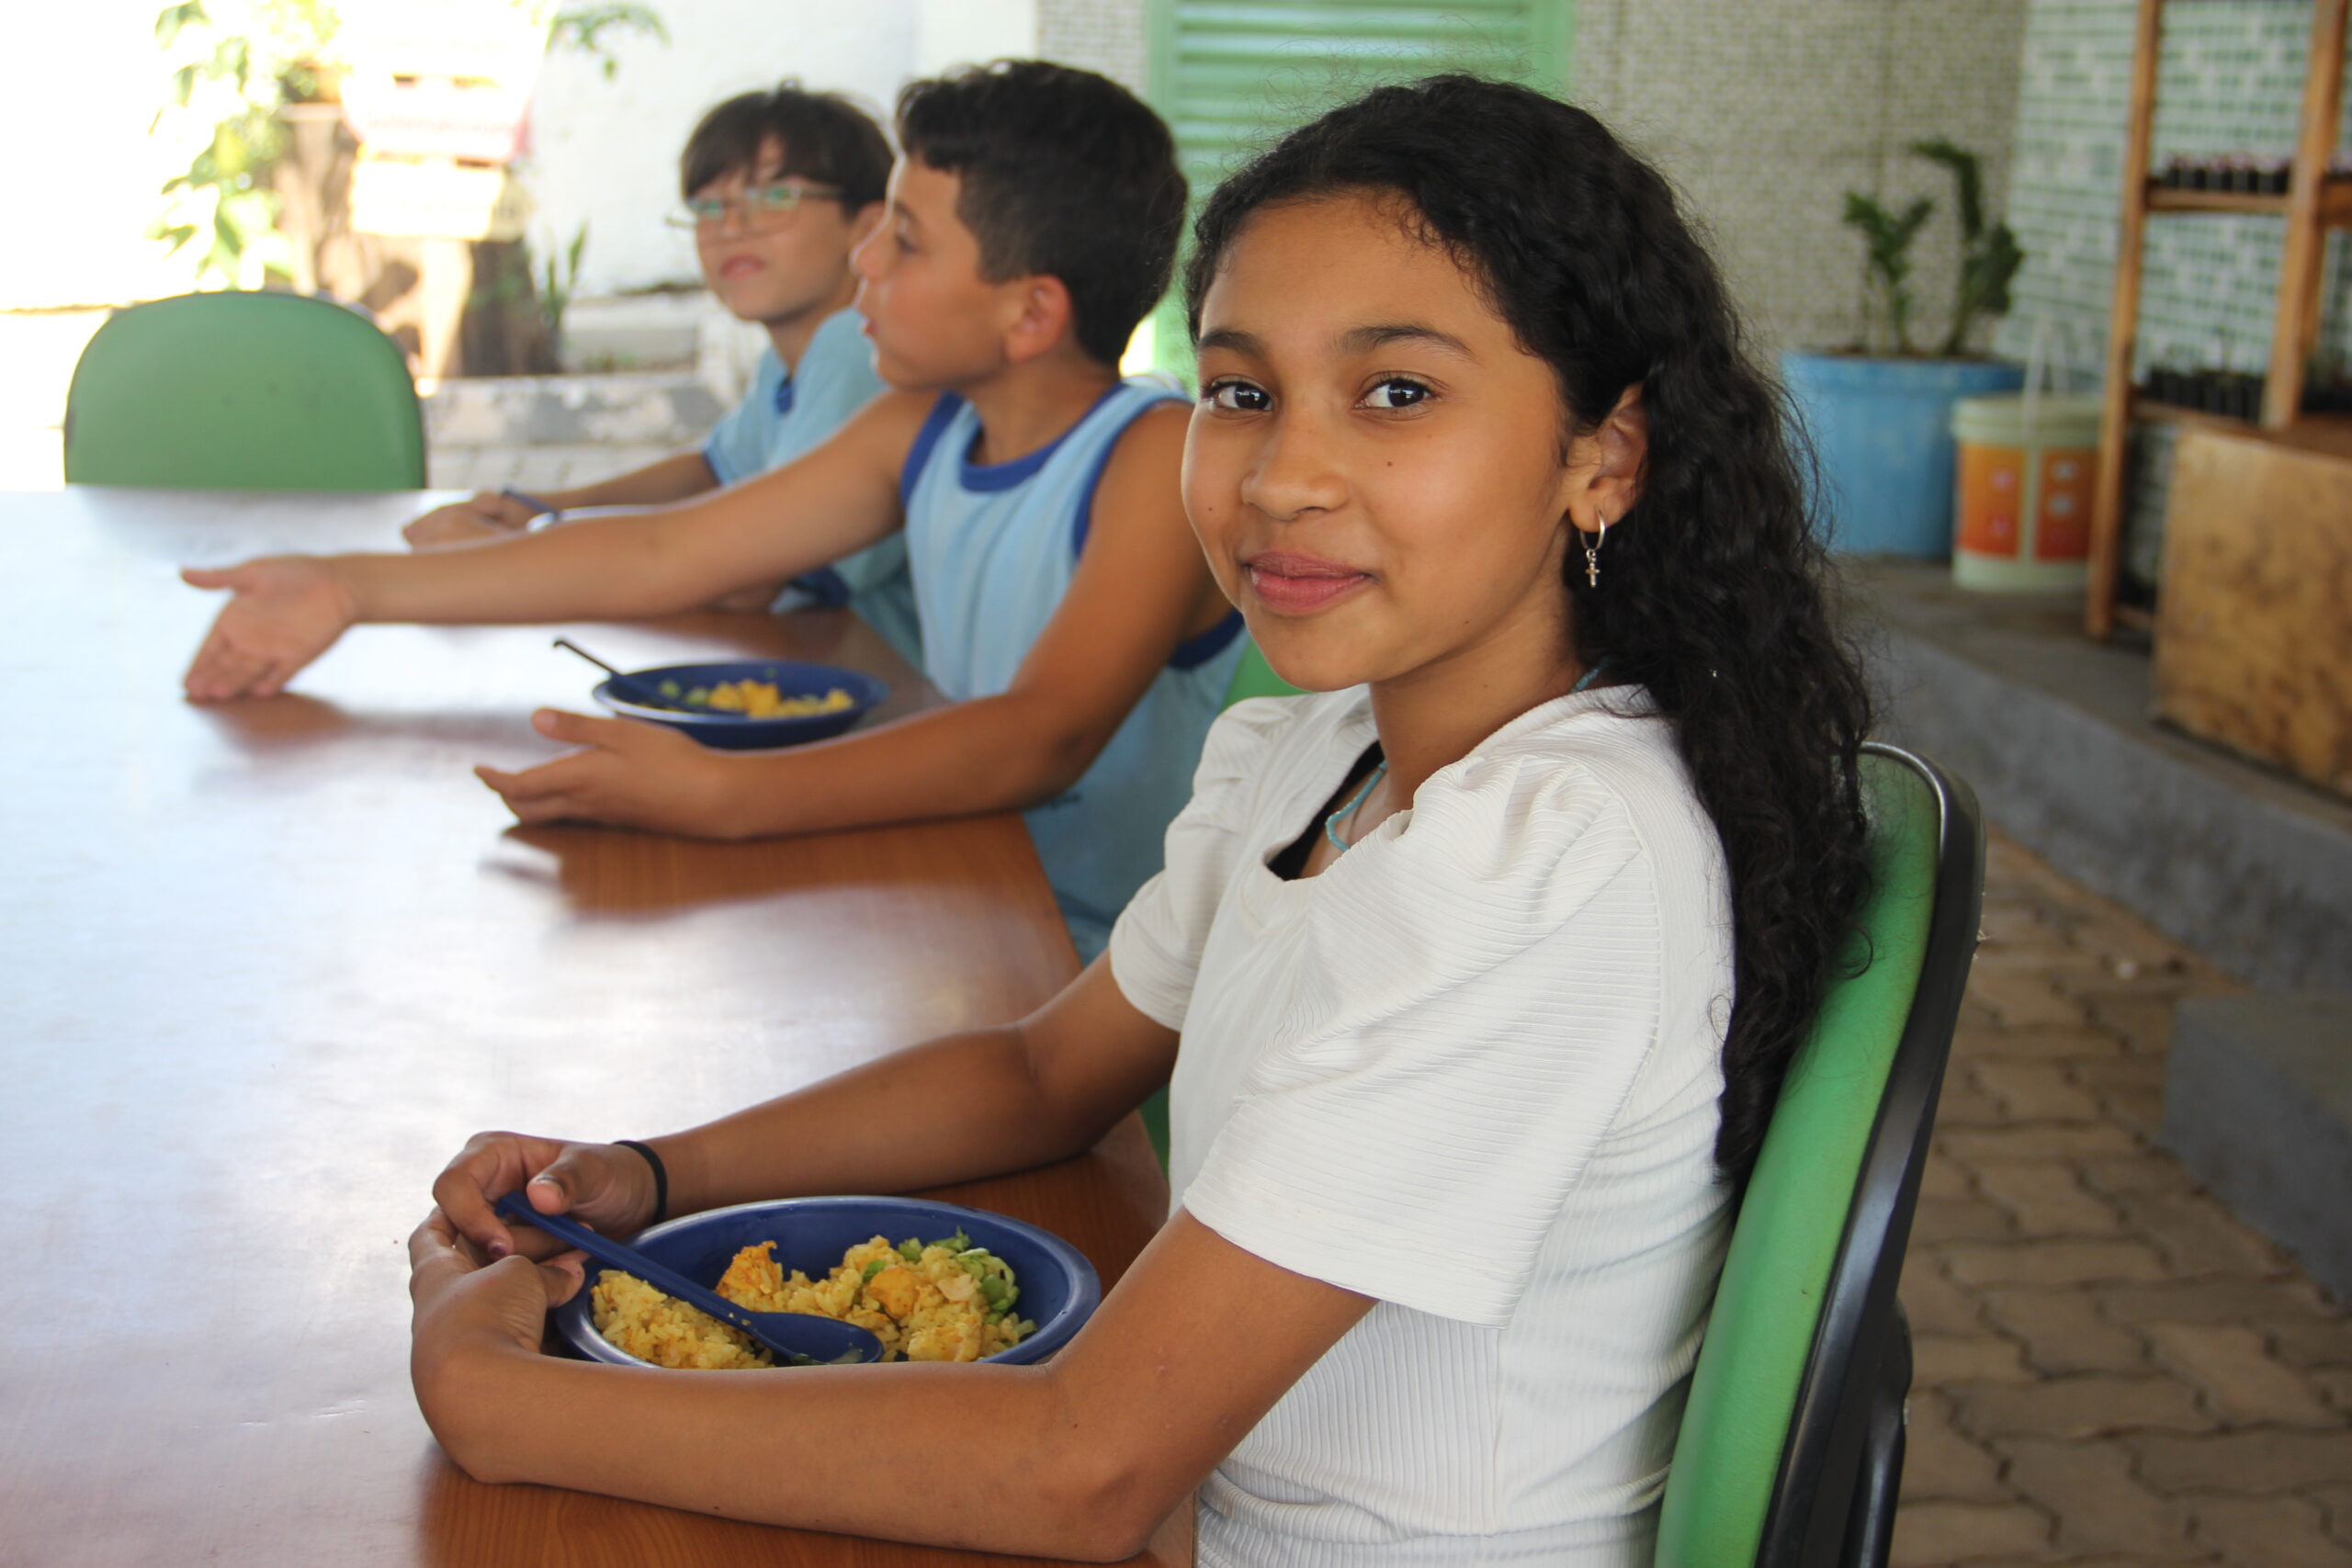 Crianças comendo um prato de galinhada durante o intervalo em uma escola pública brasileira.